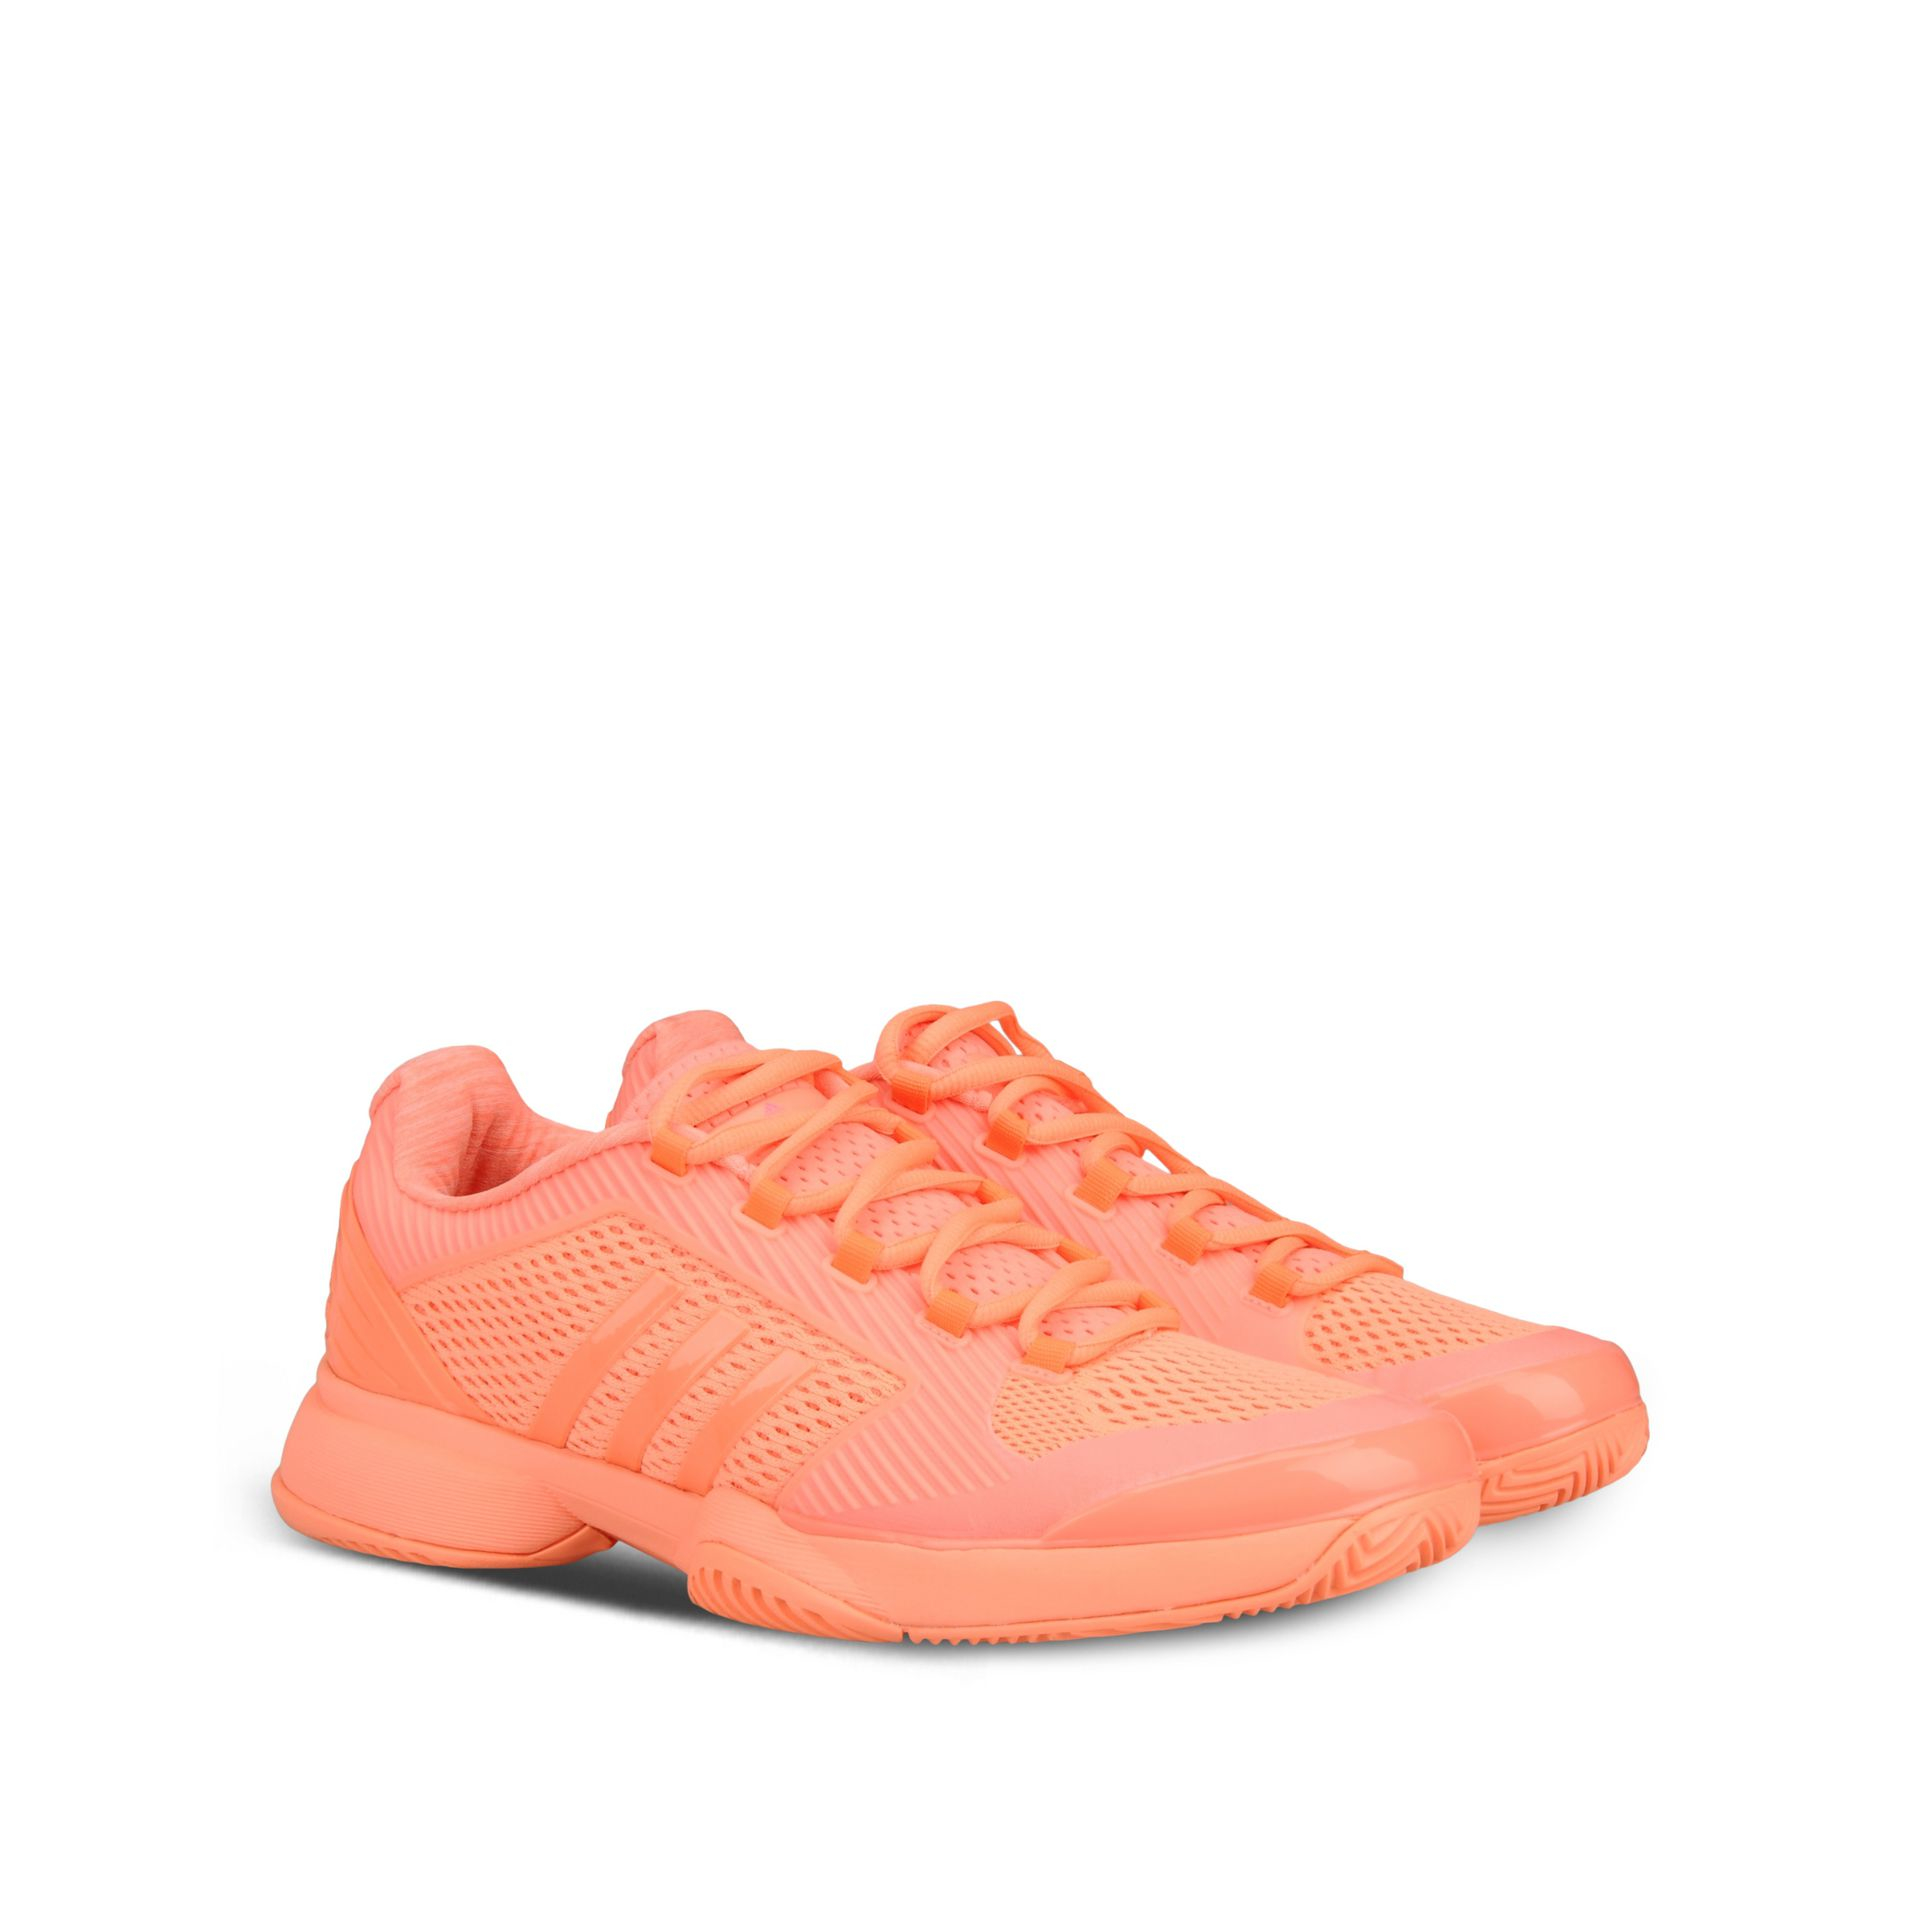 adidas By Stella McCartney Rubber Orange Barricade Tennis Shoes | Lyst